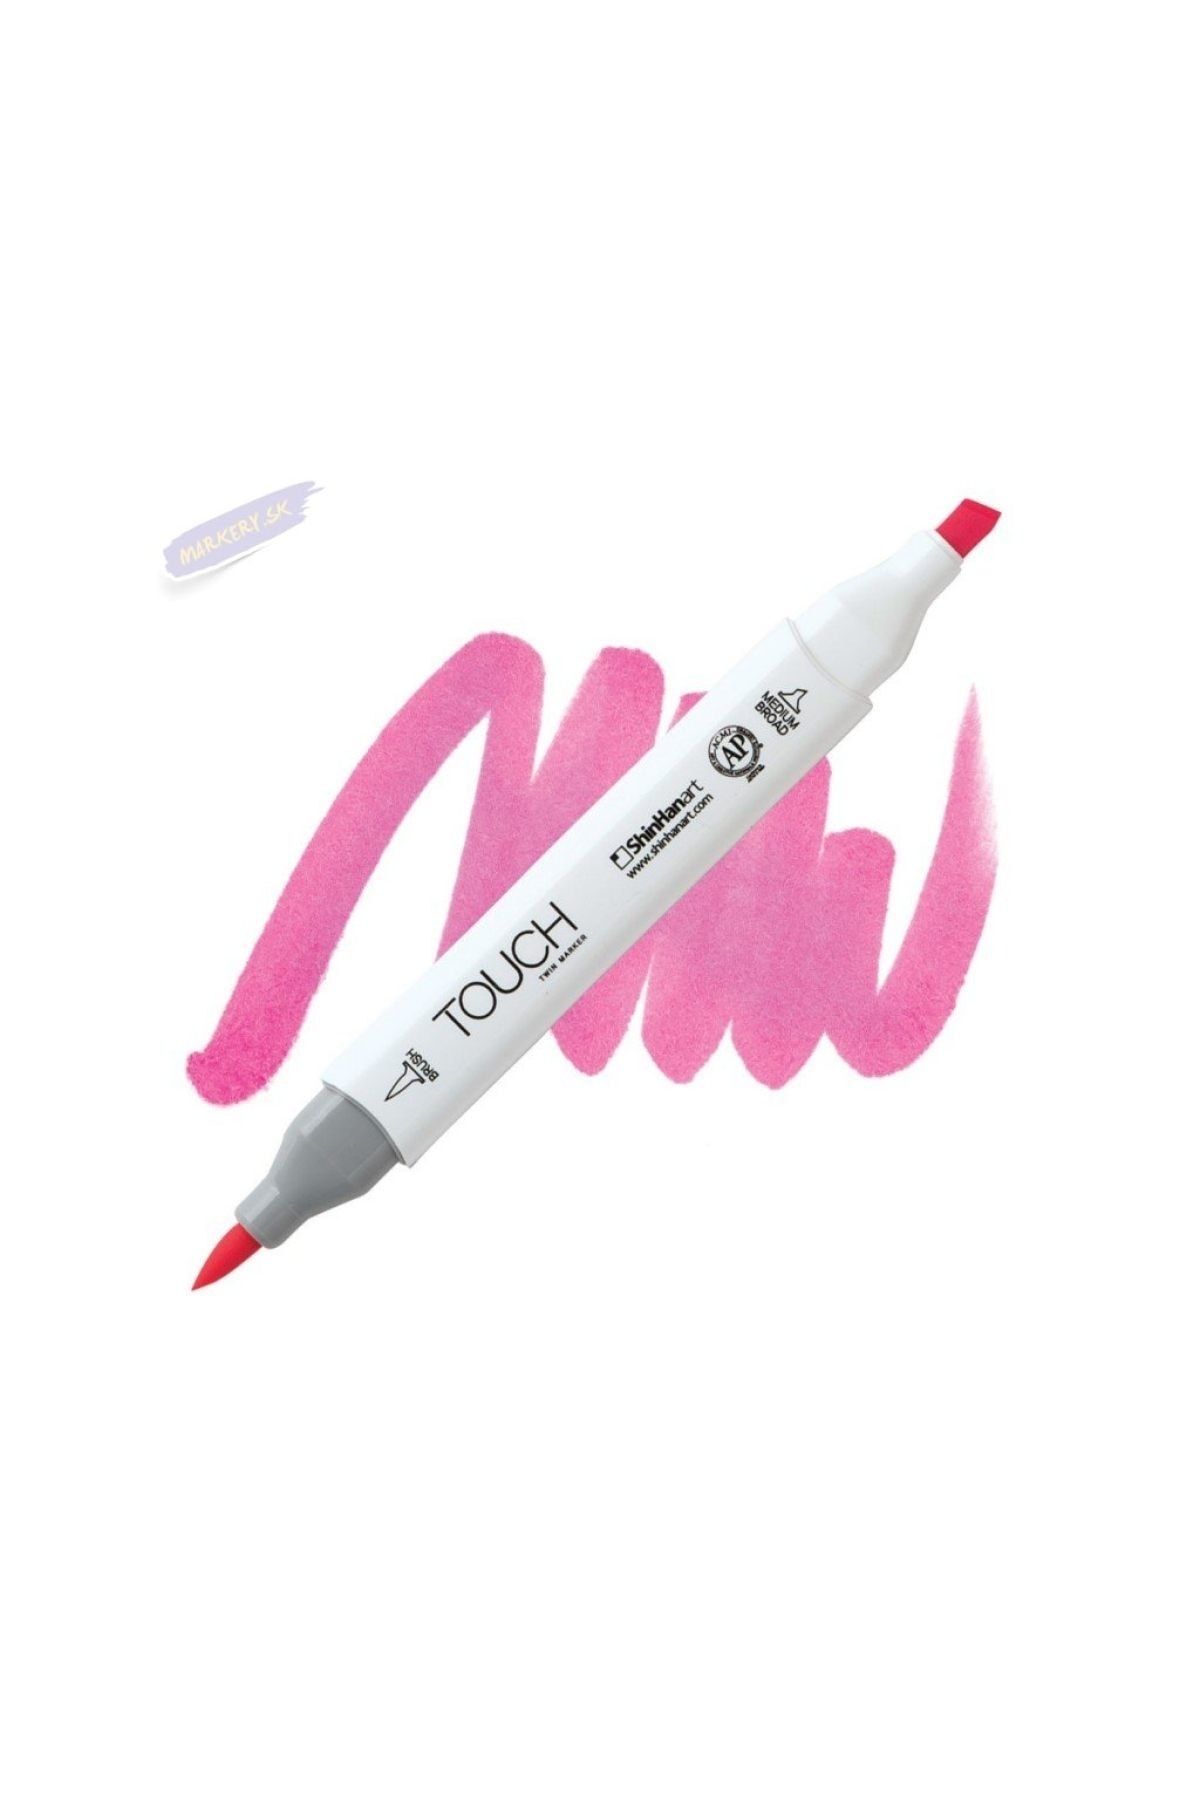 Shinhan Art Touch Twın Brush Pen : Çift Taraflı Marker : F126 Fluorescent Pink